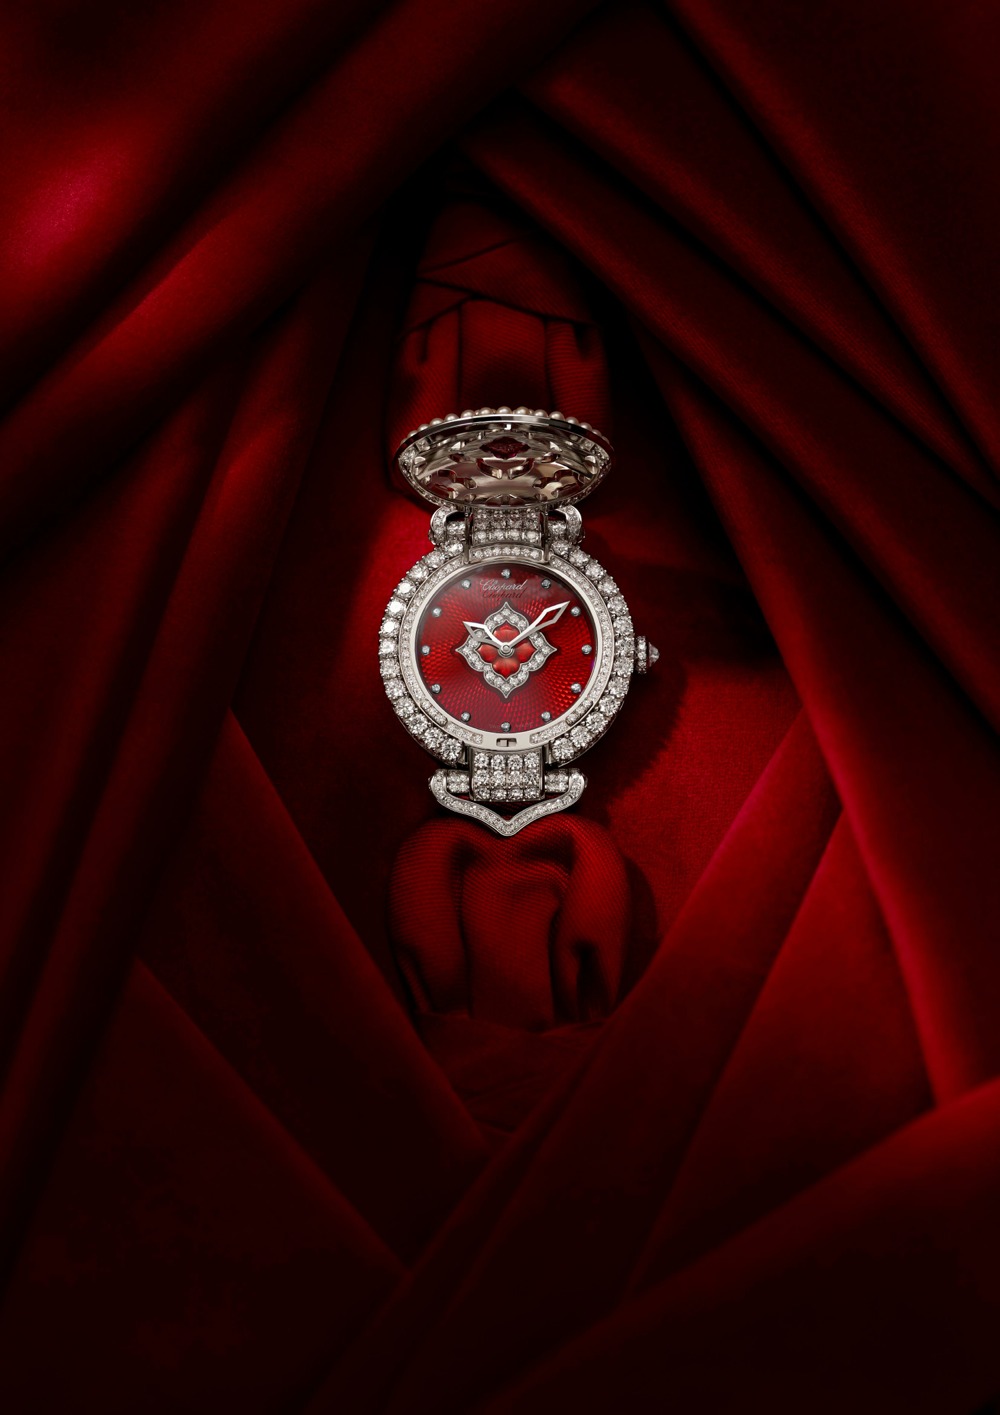 imagen 2 de Imperiale The Empress Watch, el reloj joya propio de una zarina de Rusia.